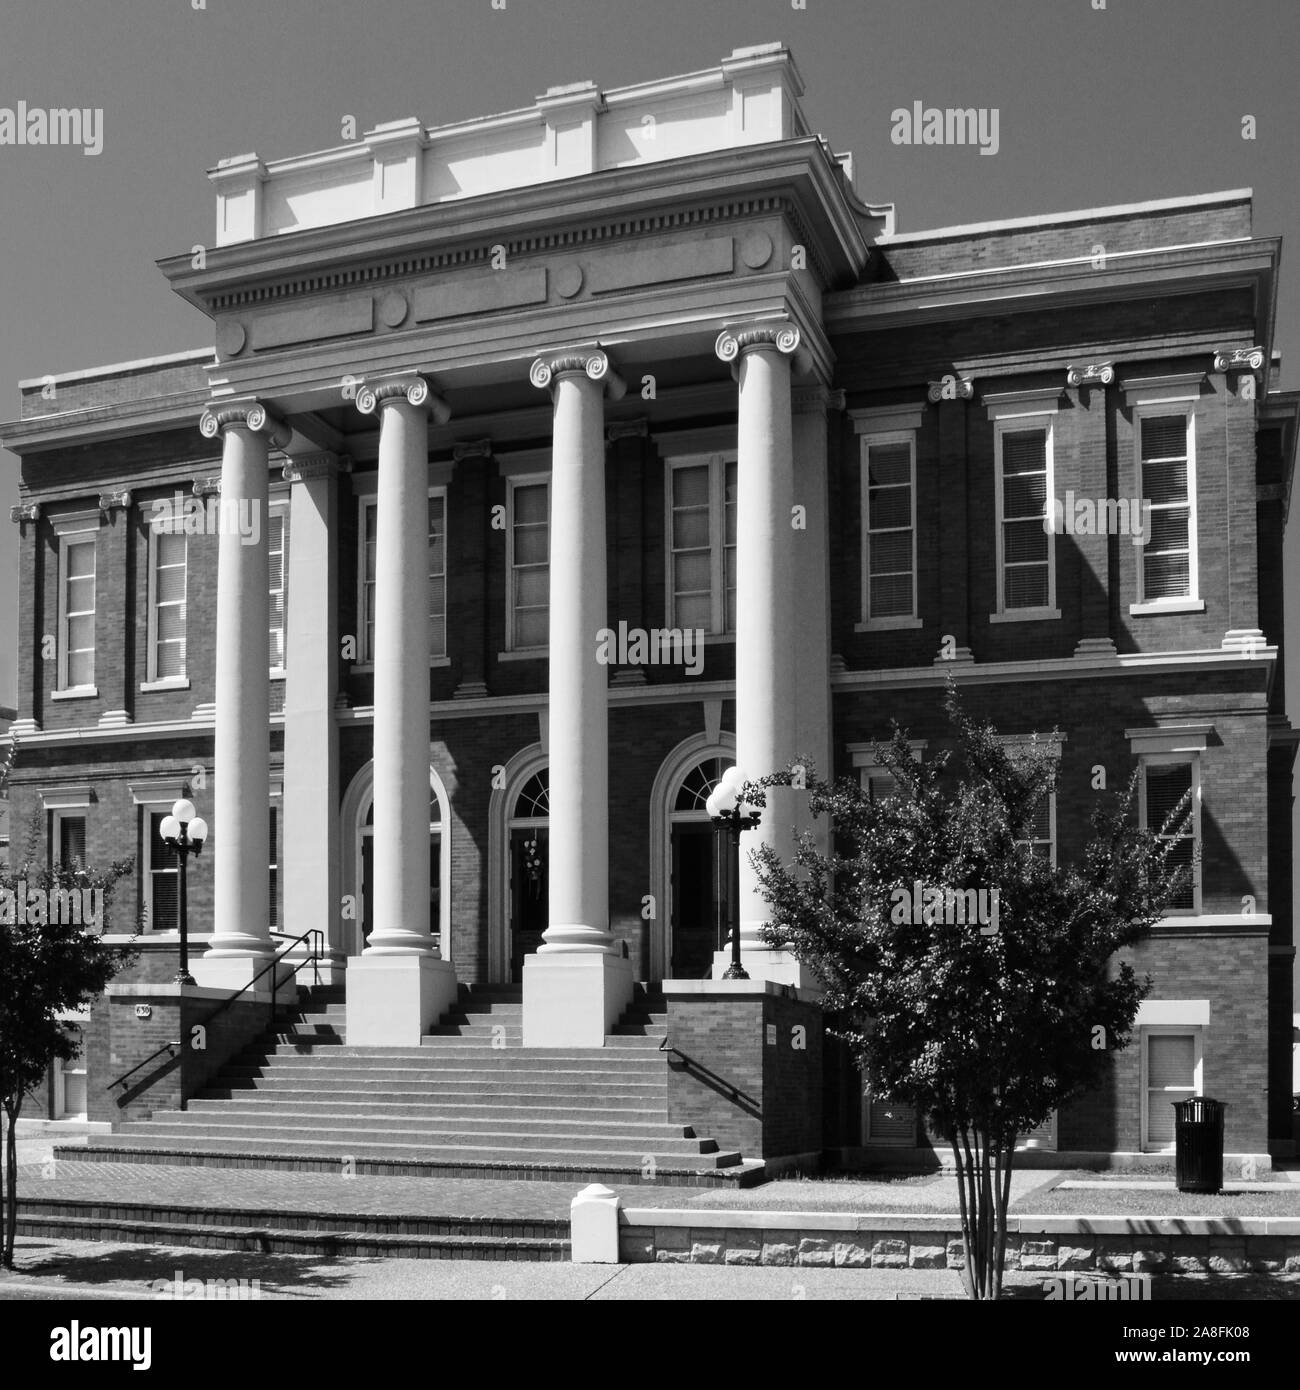 Forrest le tribunal de comté, aux côtés de la Masonic Temple et de la rue Principale église méthodiste dans une petite ville de l'Amérique, Hattiesburg, MS, ETATS UNIS Banque D'Images